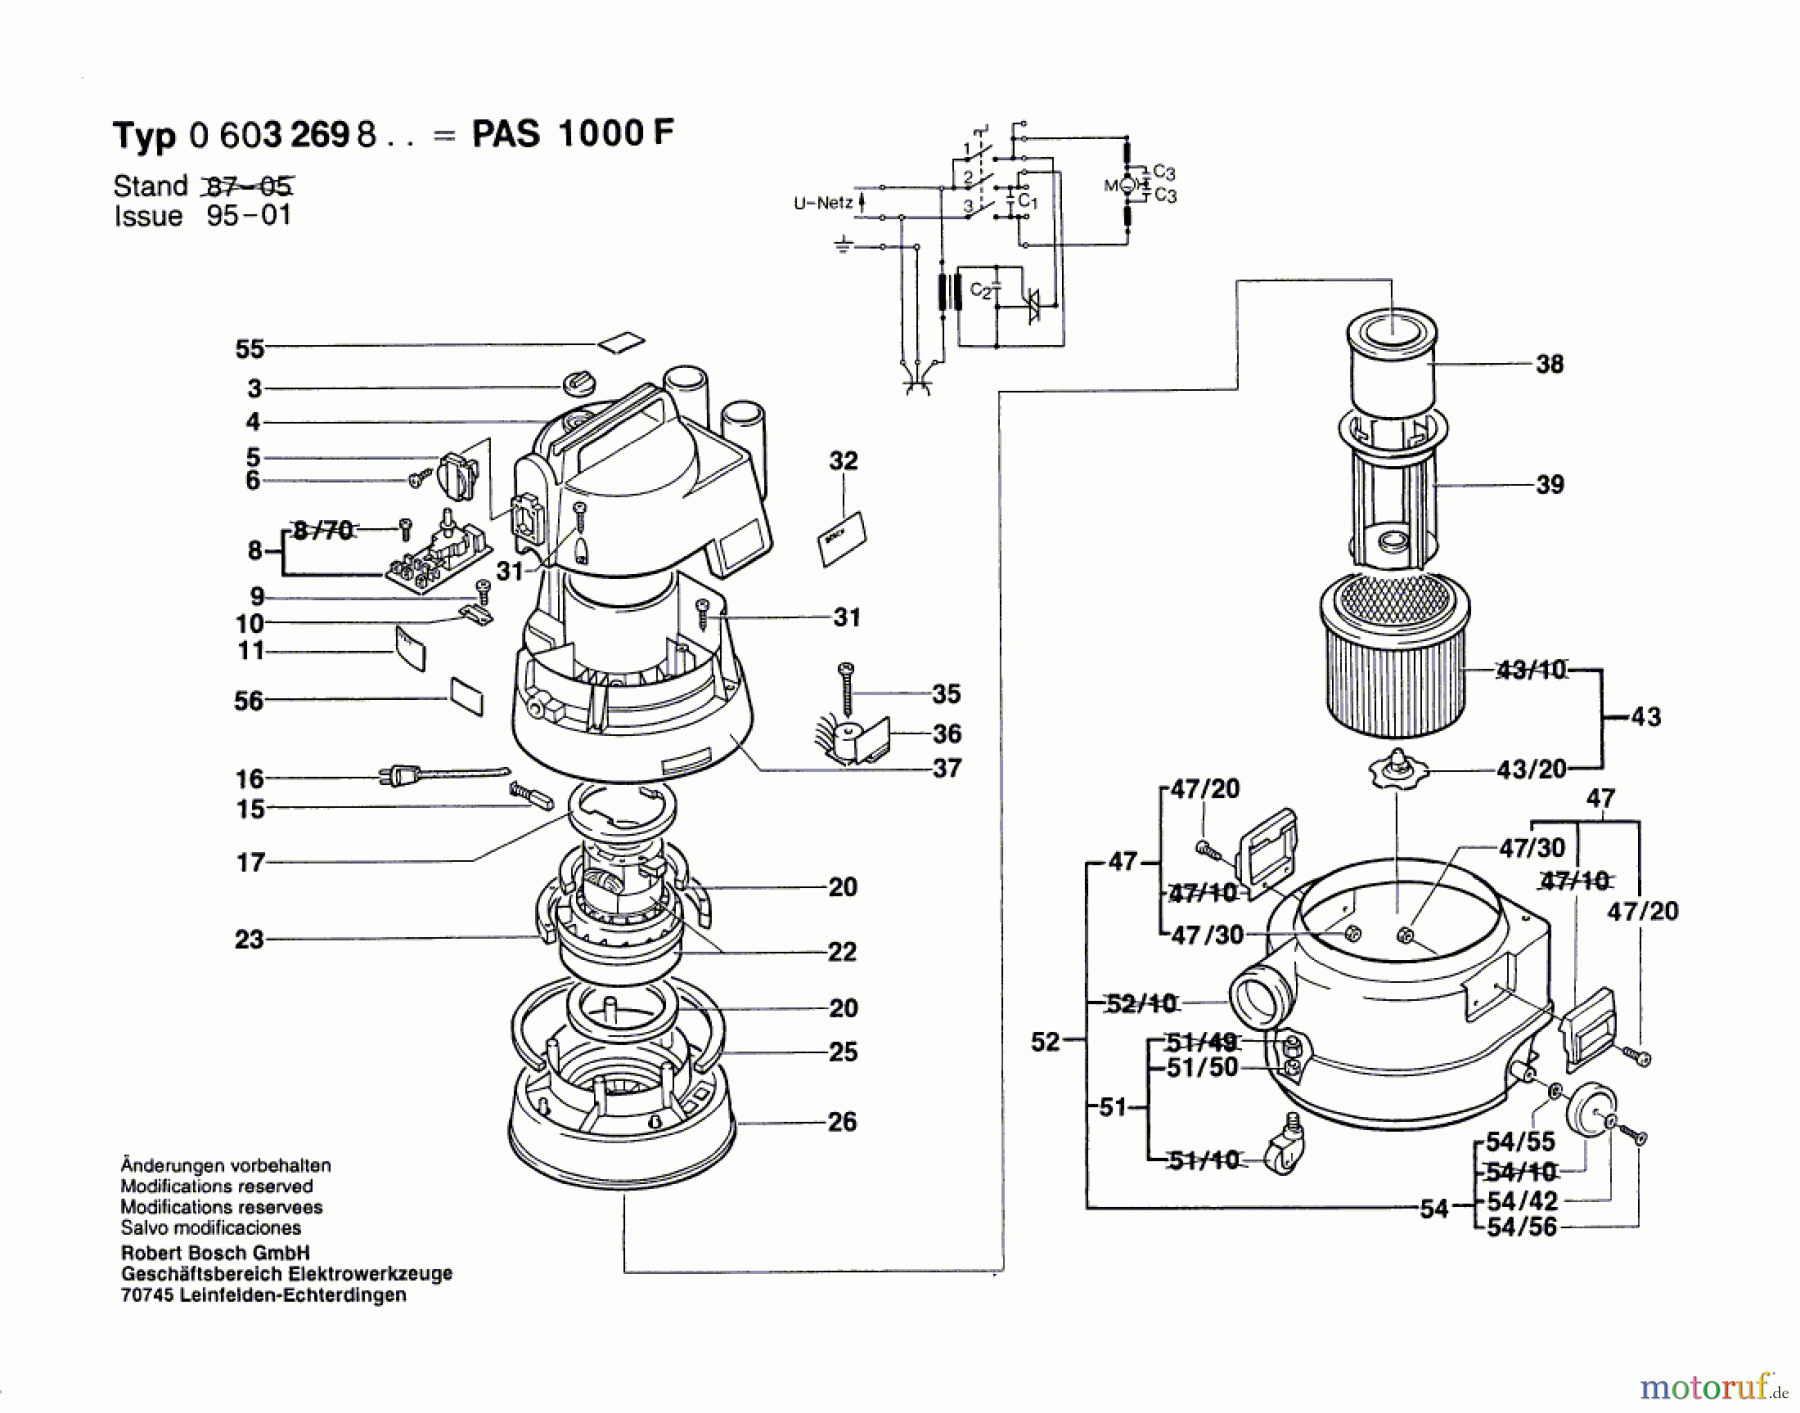  Bosch Werkzeug Allzwecksauger PAS 1000 F Seite 1